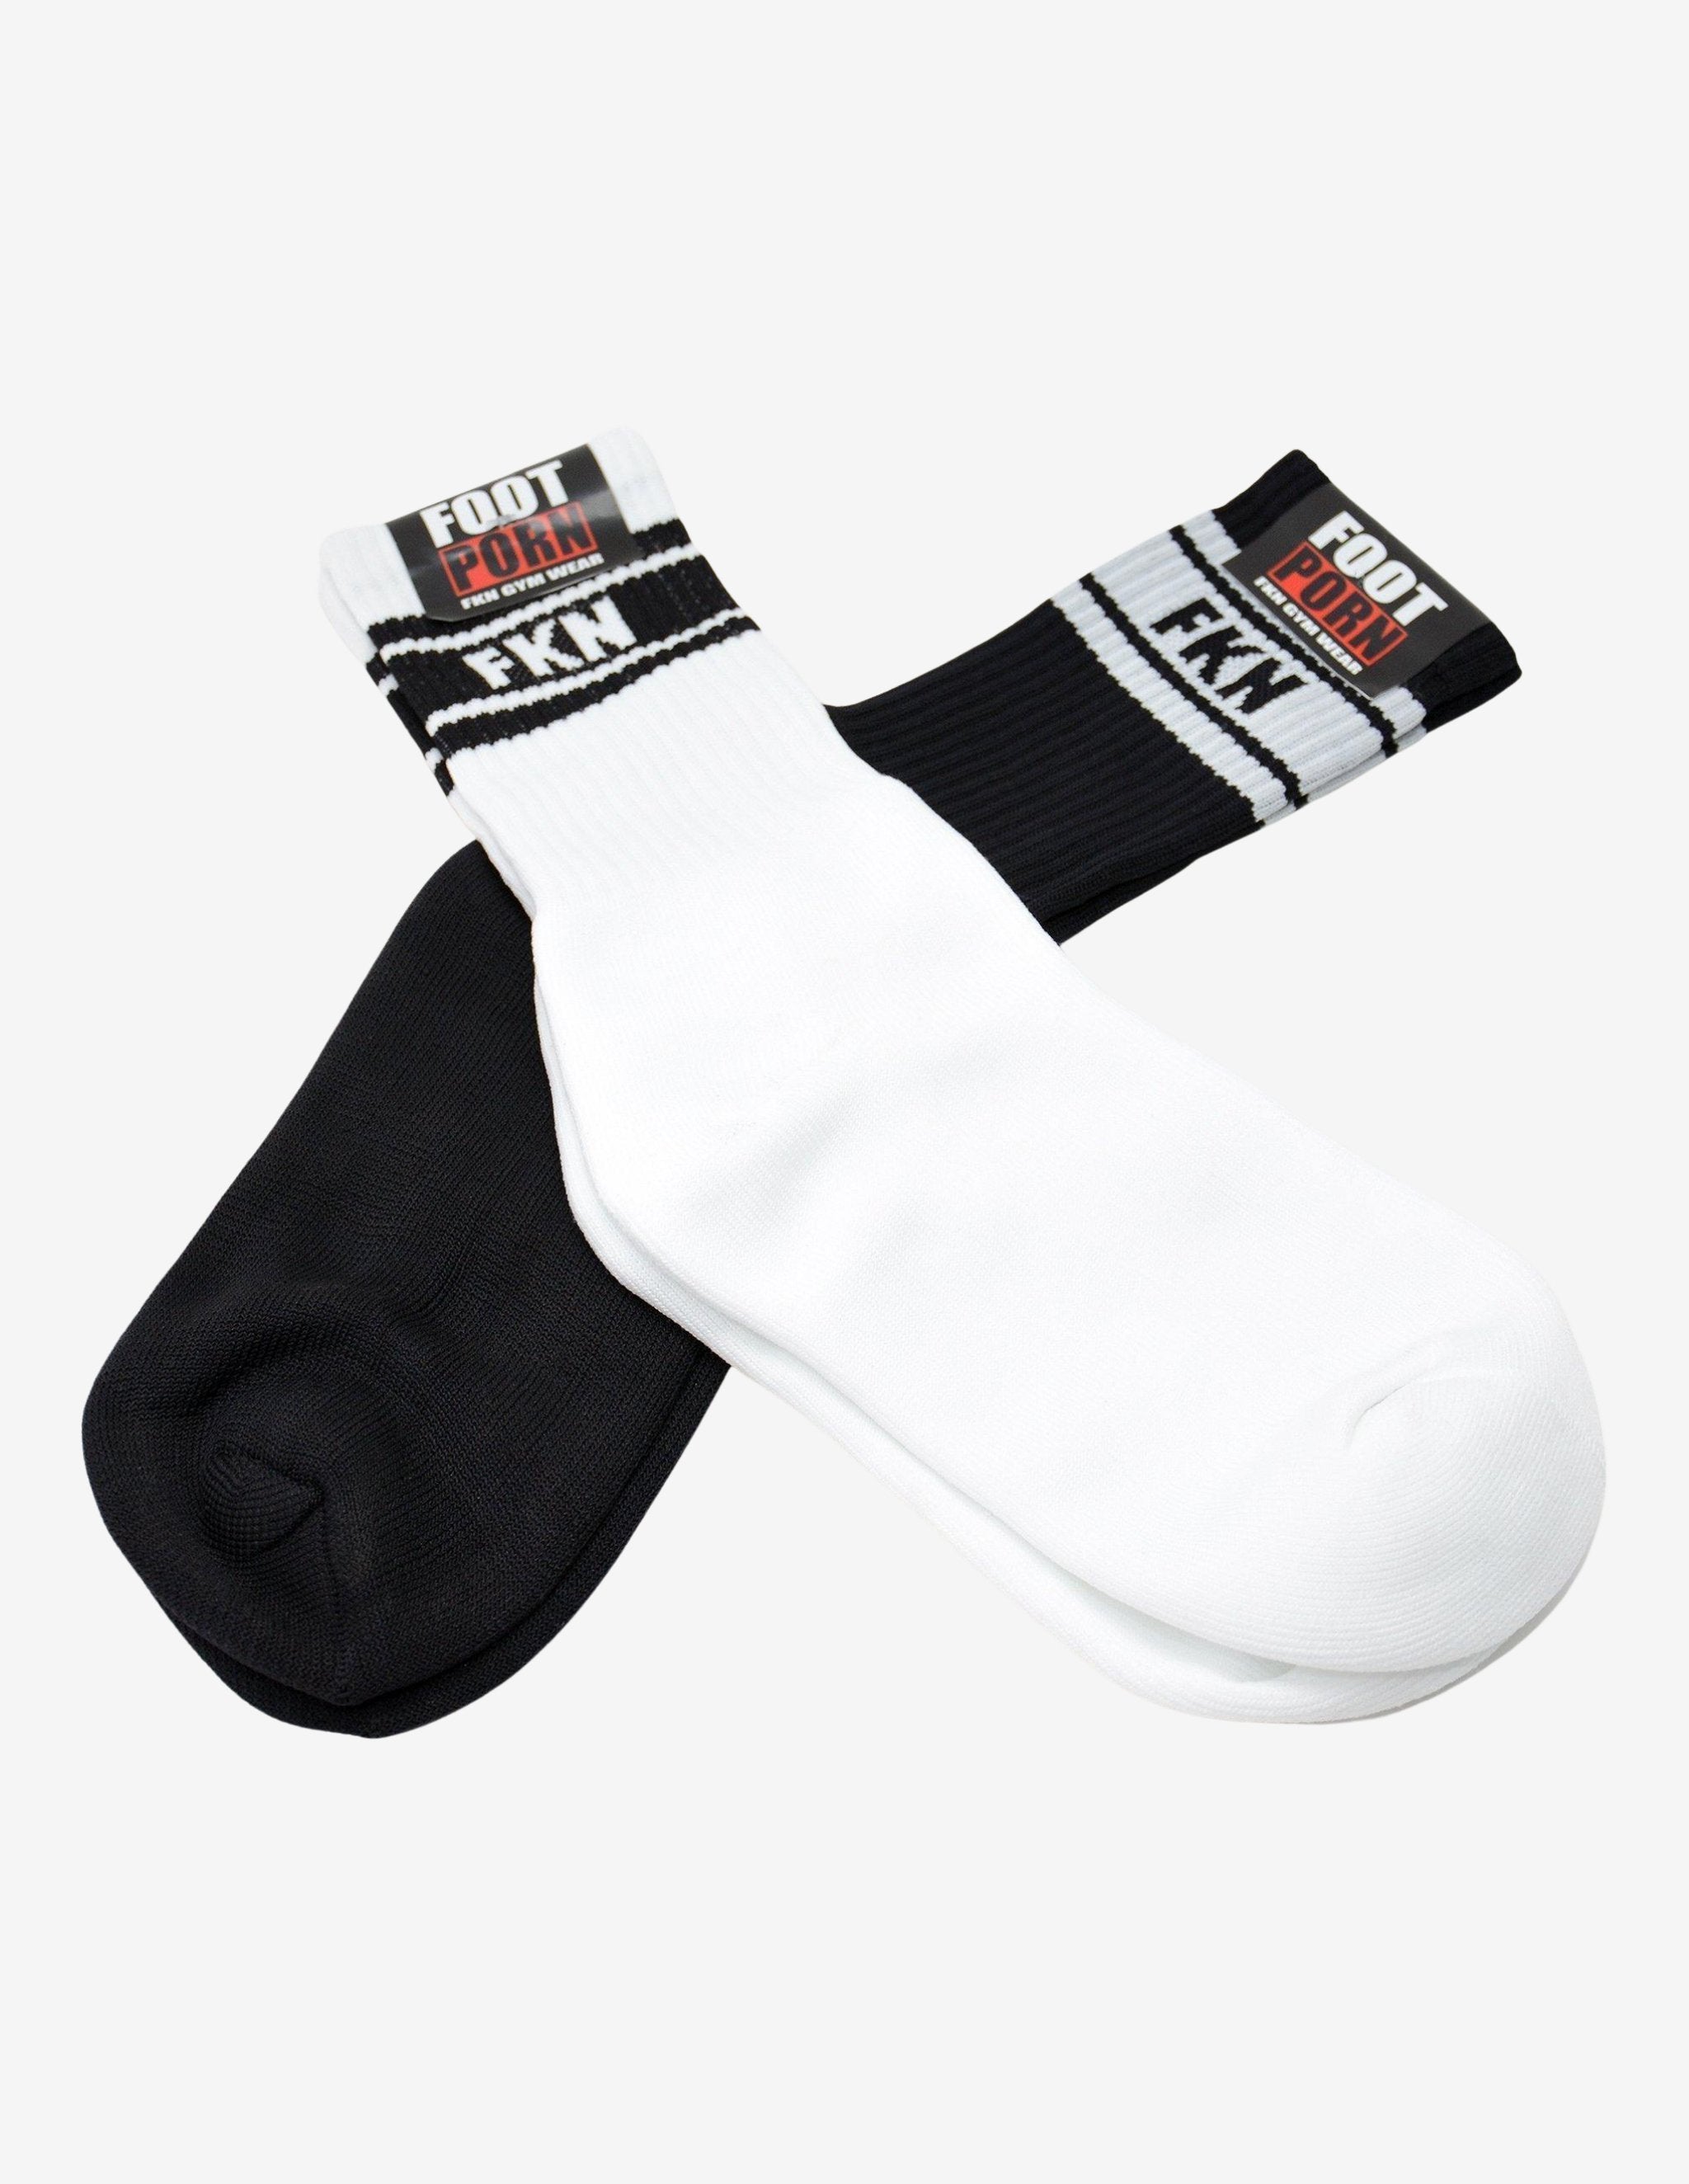 BLACK-Socks-FKN Gym Wear-Guru Muscle